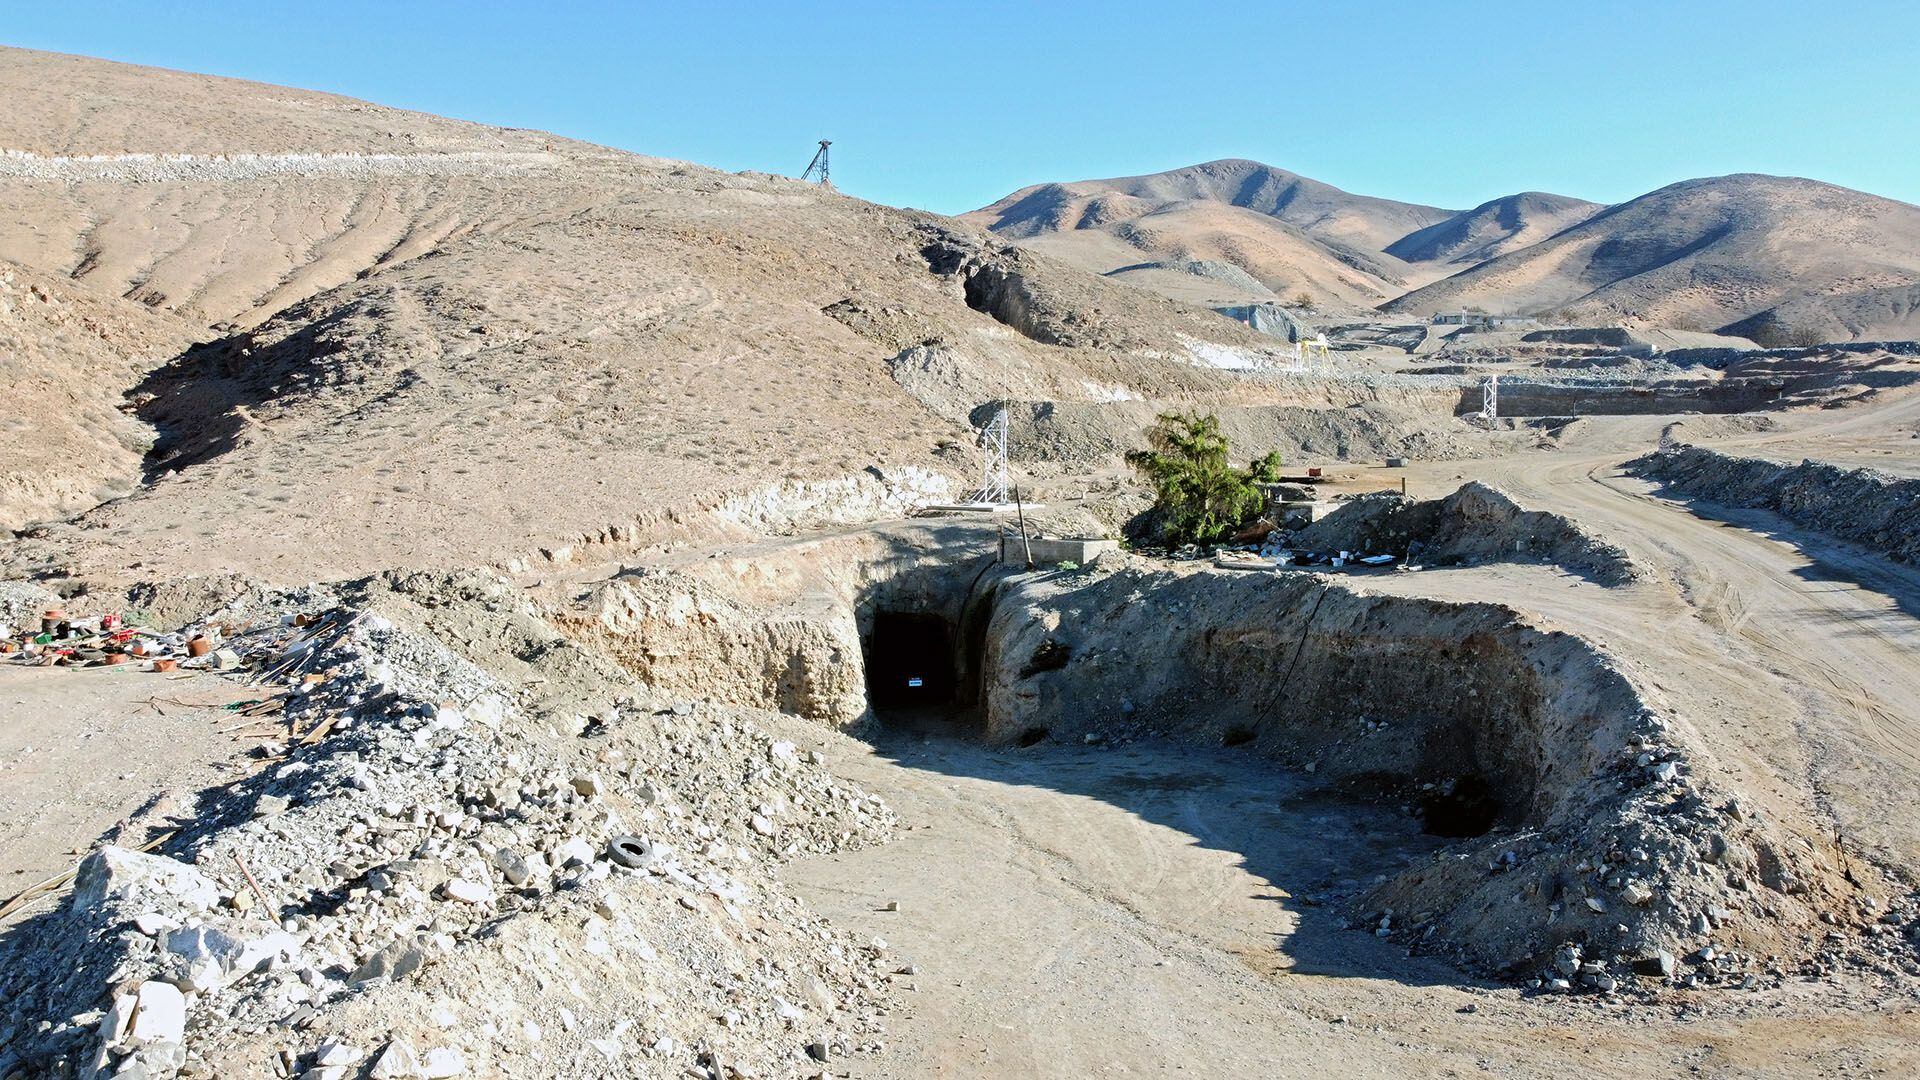 Los 33 mineros estuvieron atrapados 69 días en la mina San José desde el 5 de agosto hasta el 13 de octubre. El Libro Guinness de los Récords jura que nunca antes un grupo de personas permaneció tanto tiempo bajo tanta tierra (Alex F. CATRIN / AFP)